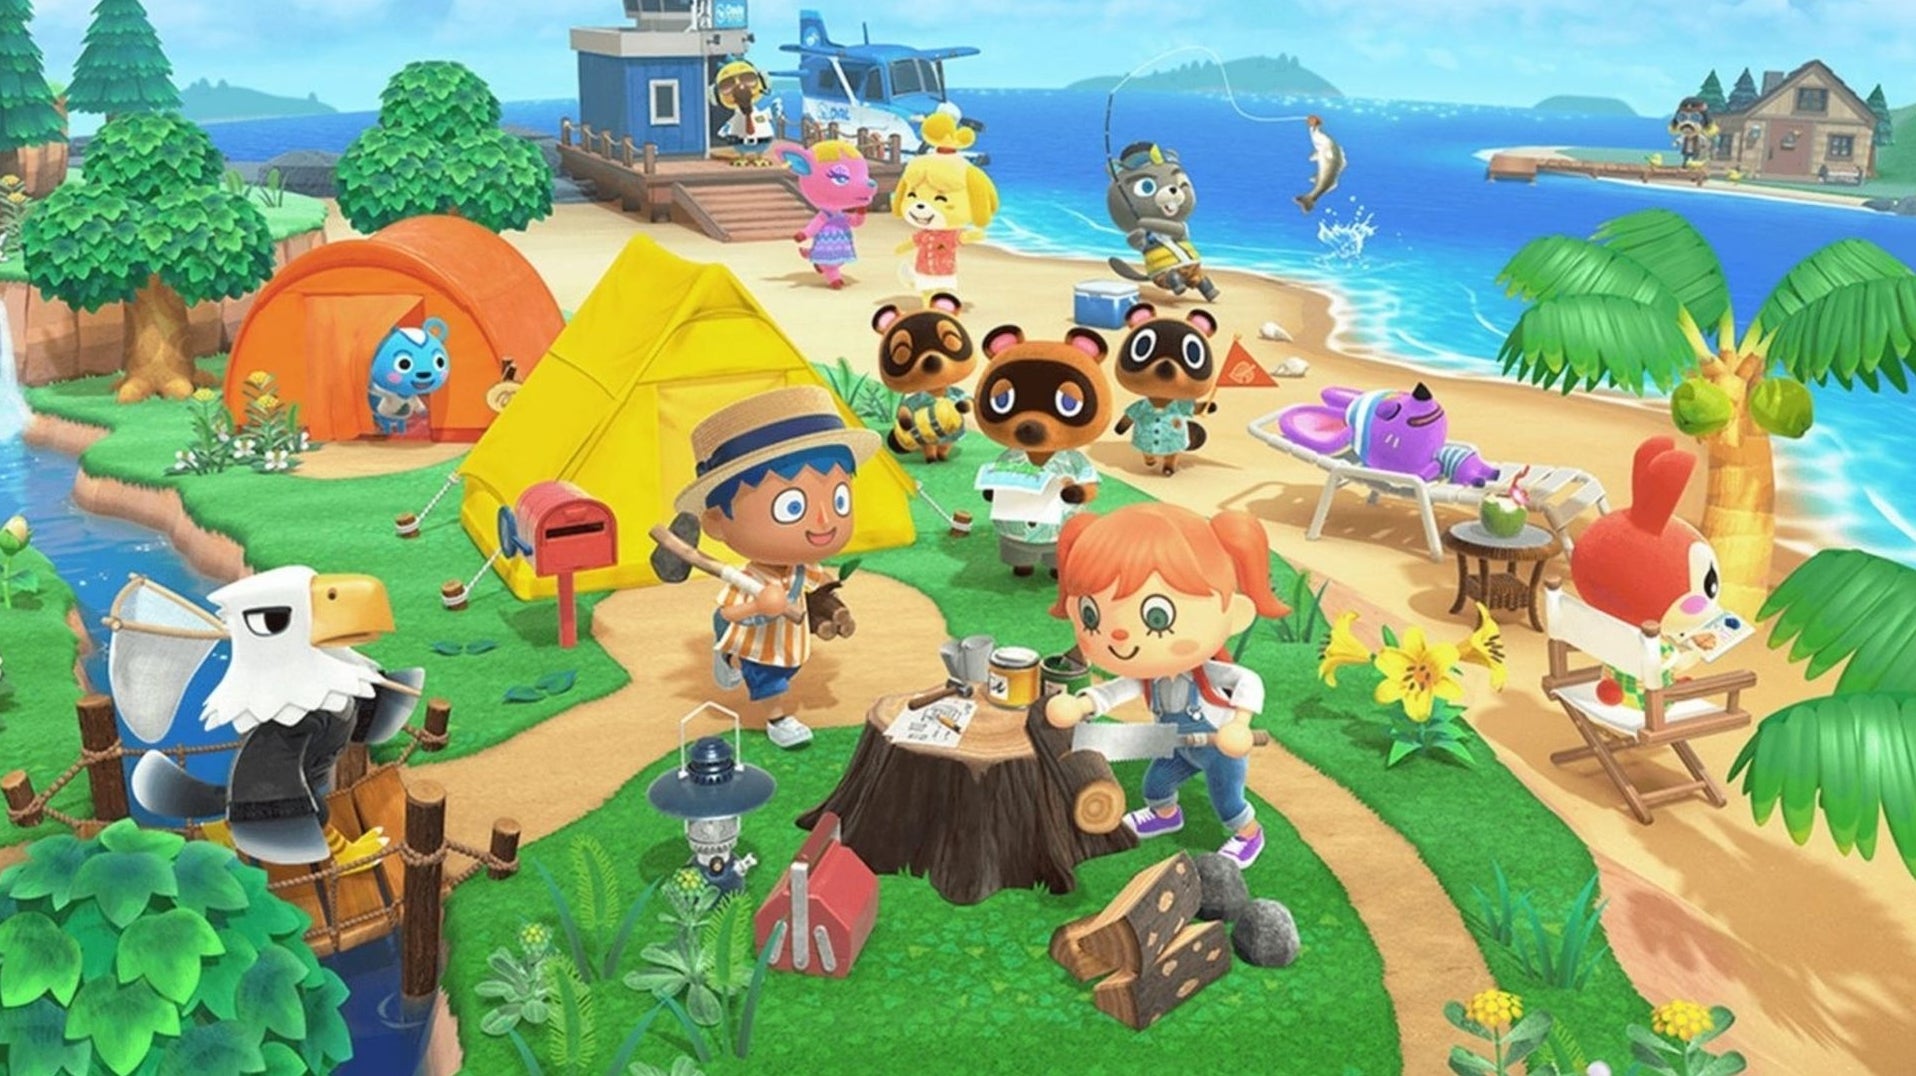 Immagine di Animal Crossing: New Horizons per Nintendo Switch disponibile su Amazon con un'offerta imperdibile!